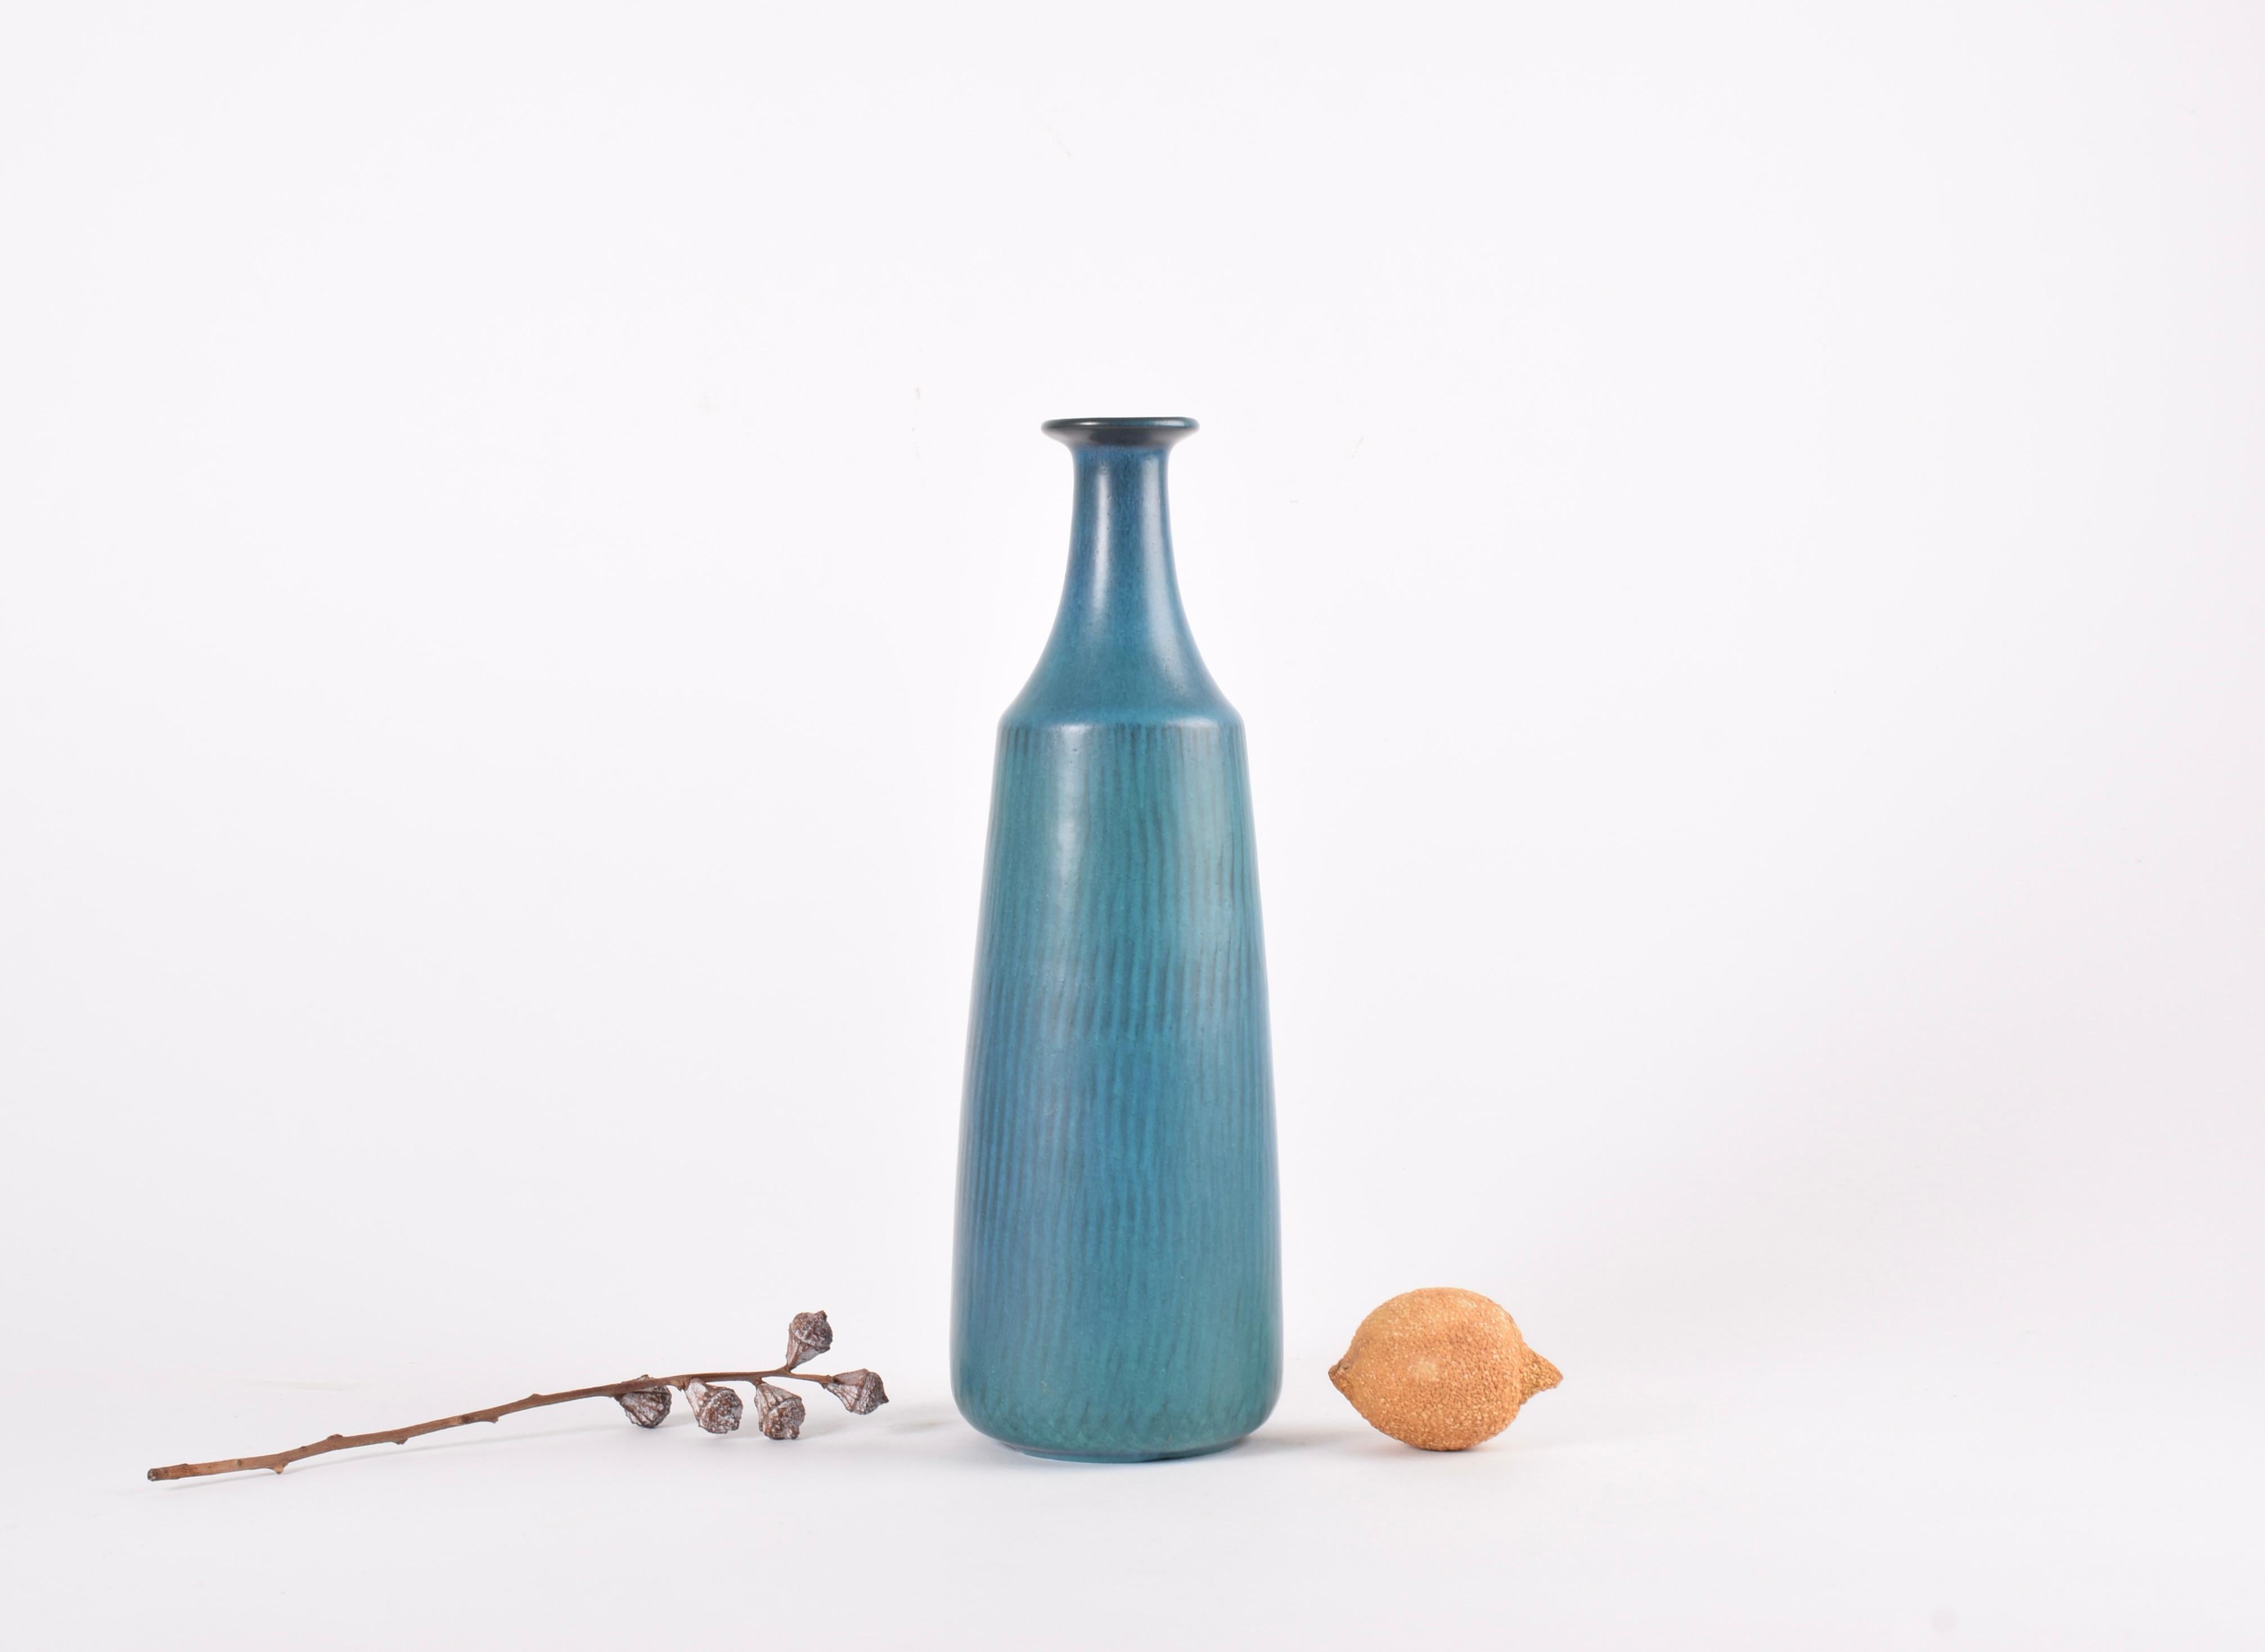 Hohe und schlanke Vase, entworfen von Gunnar Nylund für Nymølle, Dänemark.  Hergestellt in den 1960er Jahren. 

Die Vase hat eine leuchtend blaugrüne Glasur über einem Strahlenmuster. 

Höhe: 30,5 cm (12.01